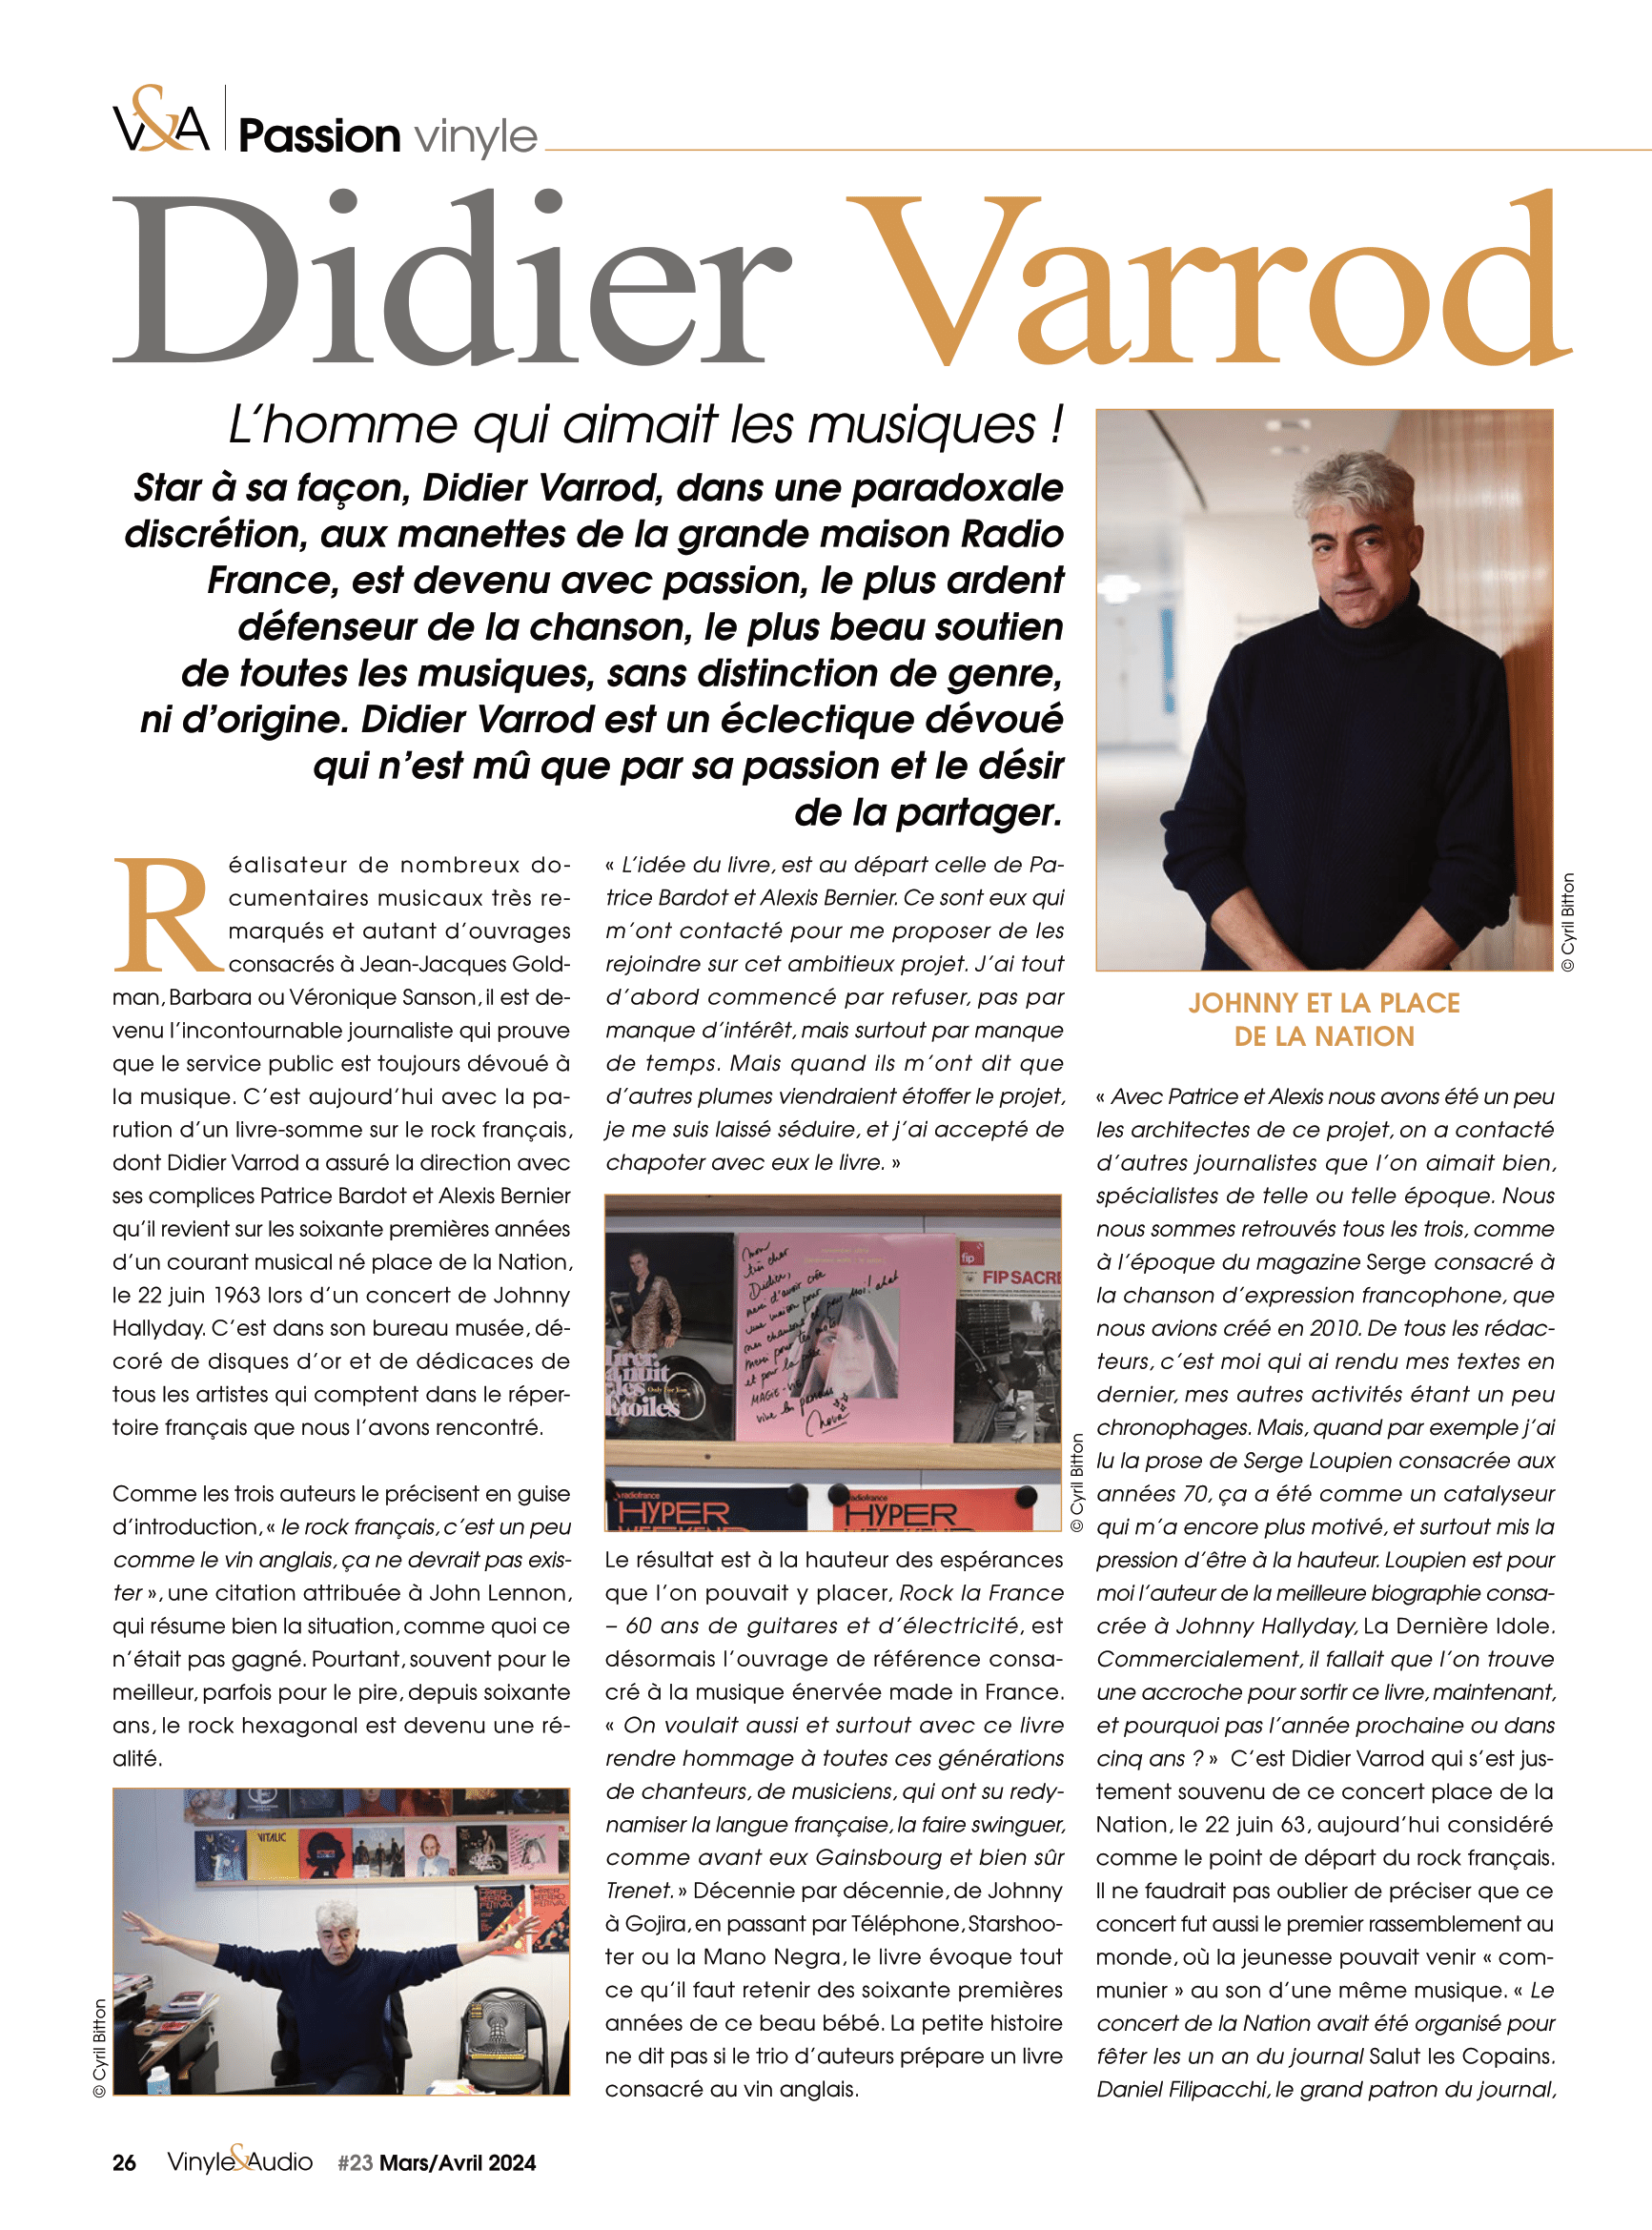 Passion vinyle : Didier Varrod